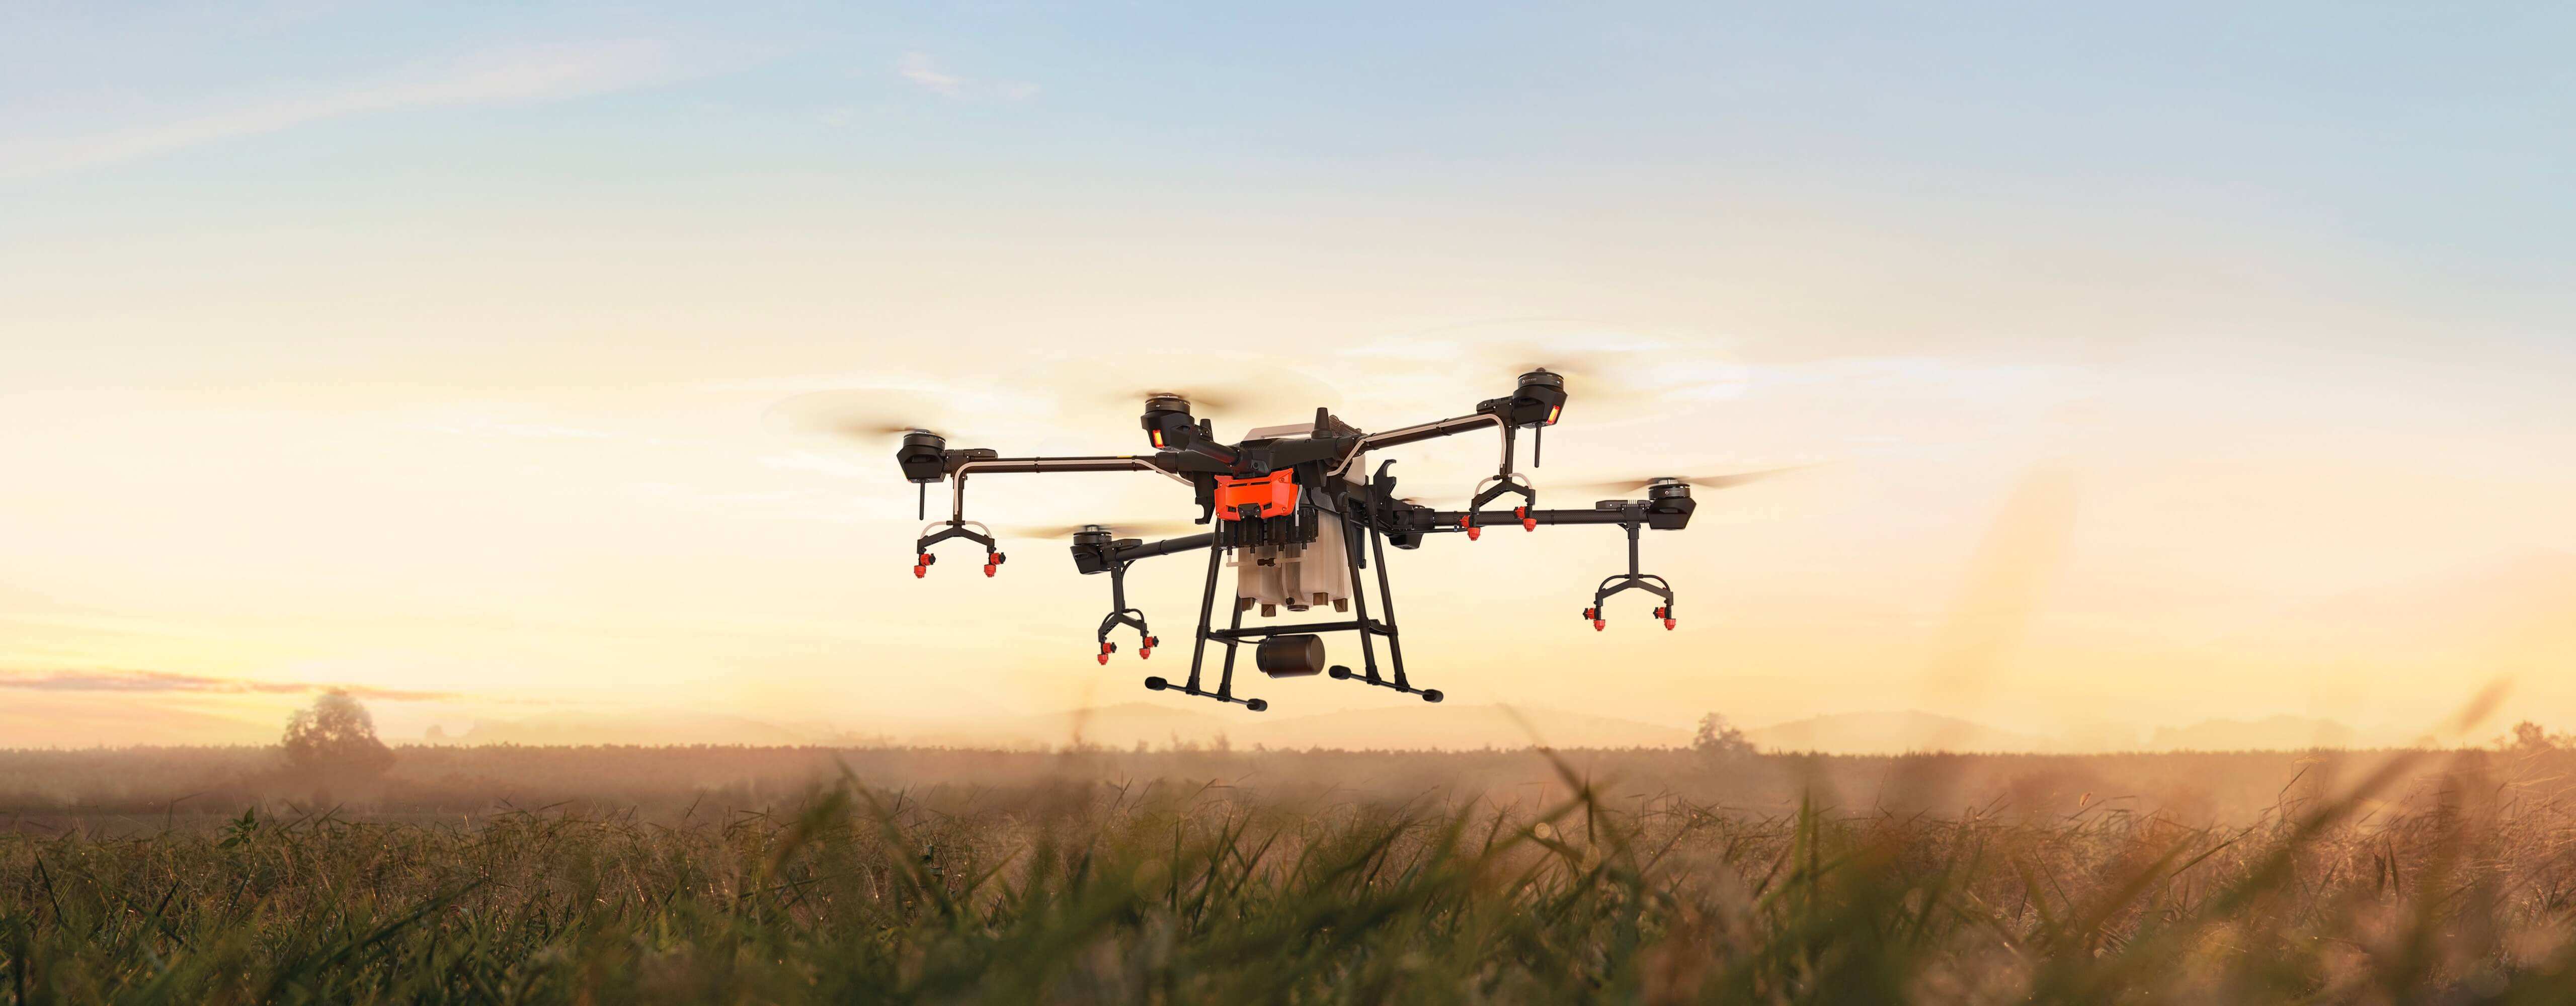 2015.05 Works 农业测绘无人机-洛客LKKER